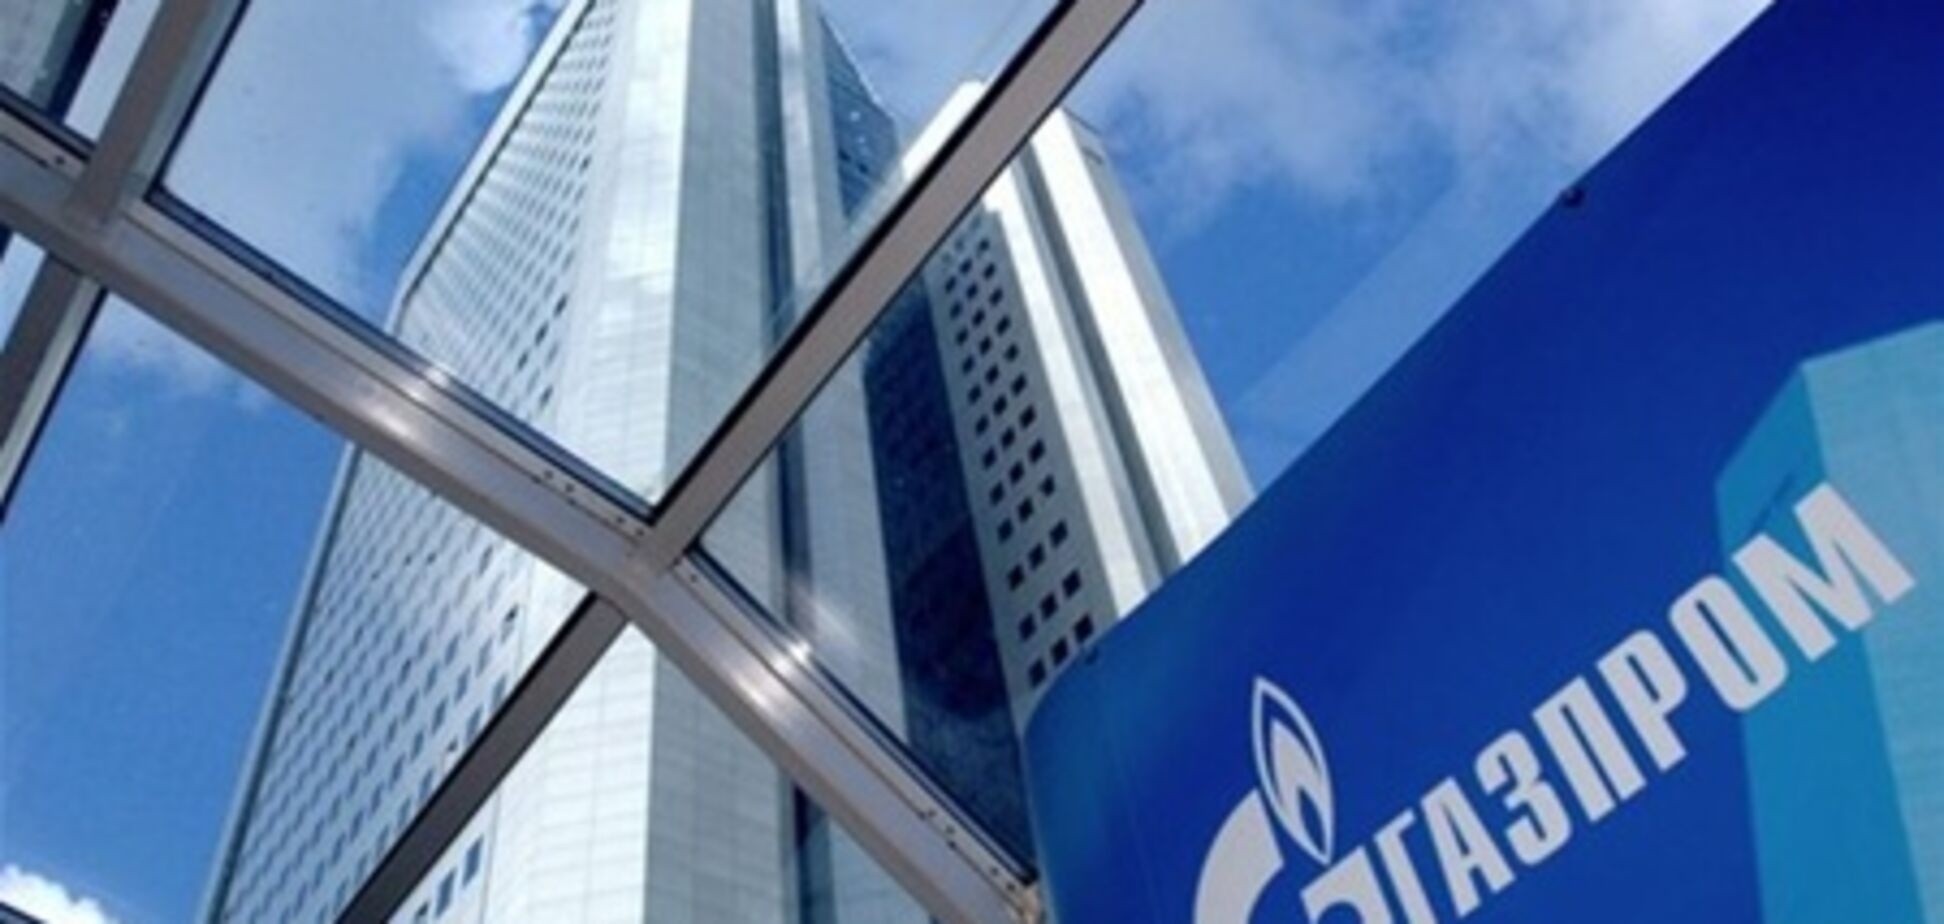 'Газпром' вибрав главу на 5 років